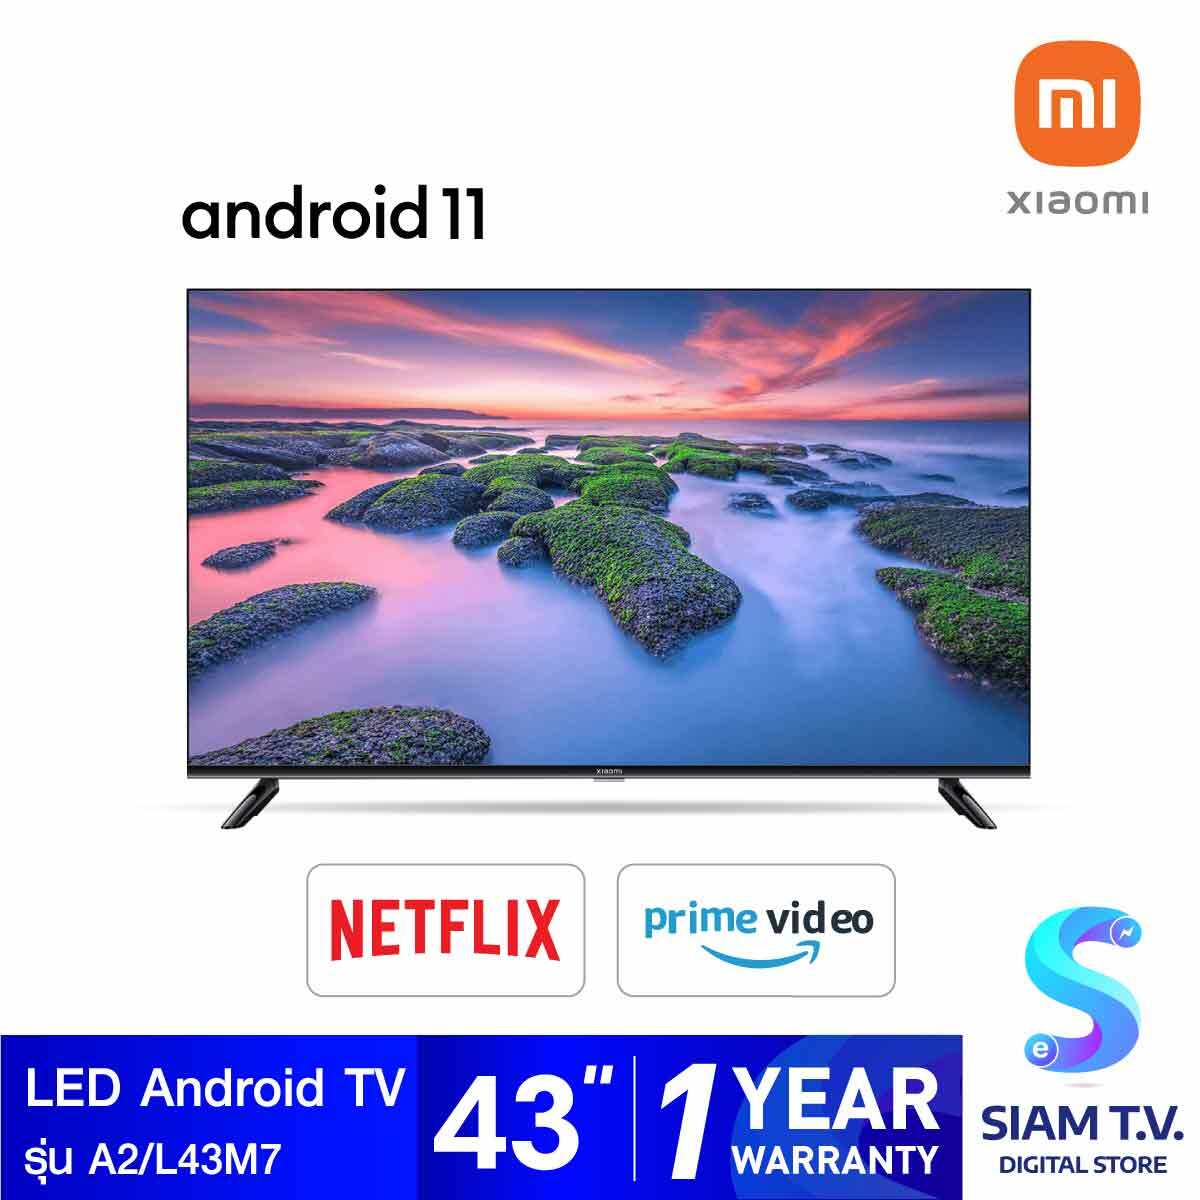 โปรโมชั่น Flash Sale : XIAOMI LED Android TV รุ่น A2/L43M7 Android 11 ขนาด 43 นิ้ว โดย สยามทีวี by Siam T.V.